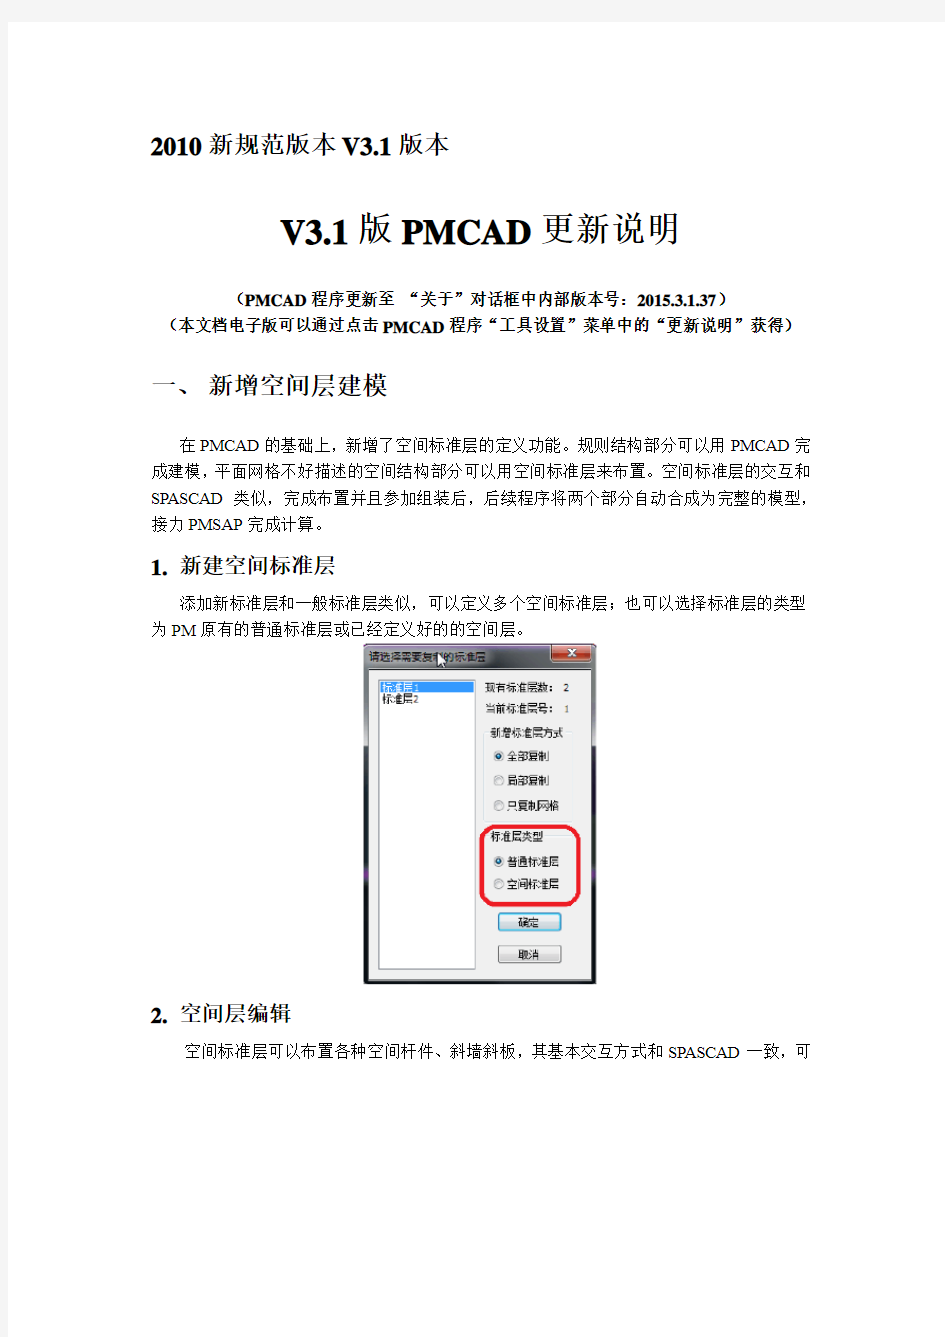 V3.1版本PMCAD更新说明